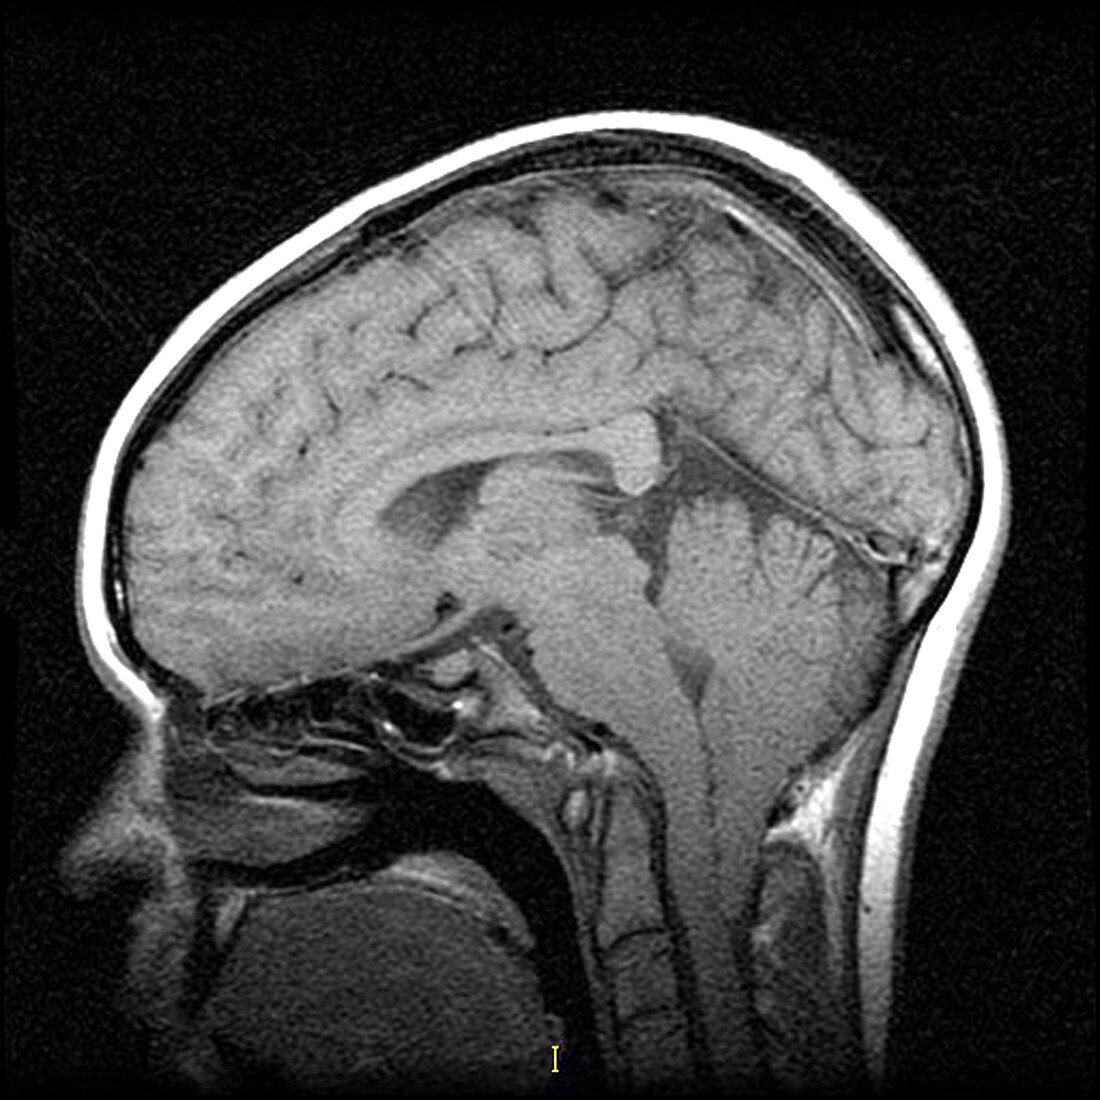 MRI of Severe Chiari I Malformation